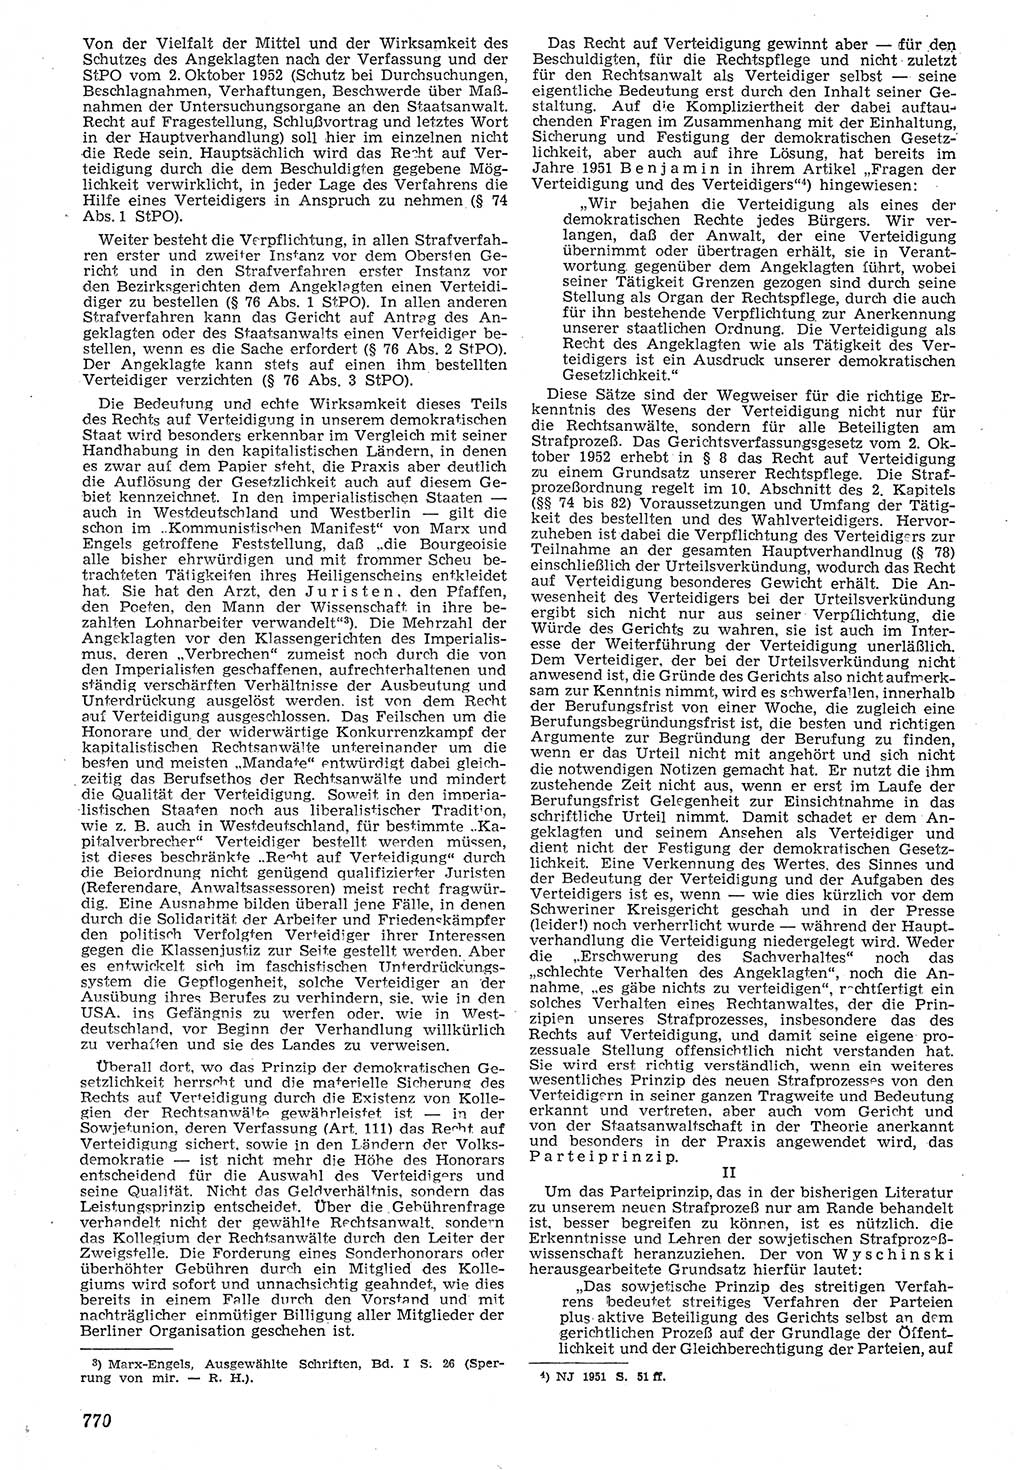 Neue Justiz (NJ), Zeitschrift für Recht und Rechtswissenschaft [Deutsche Demokratische Republik (DDR)], 7. Jahrgang 1953, Seite 770 (NJ DDR 1953, S. 770)